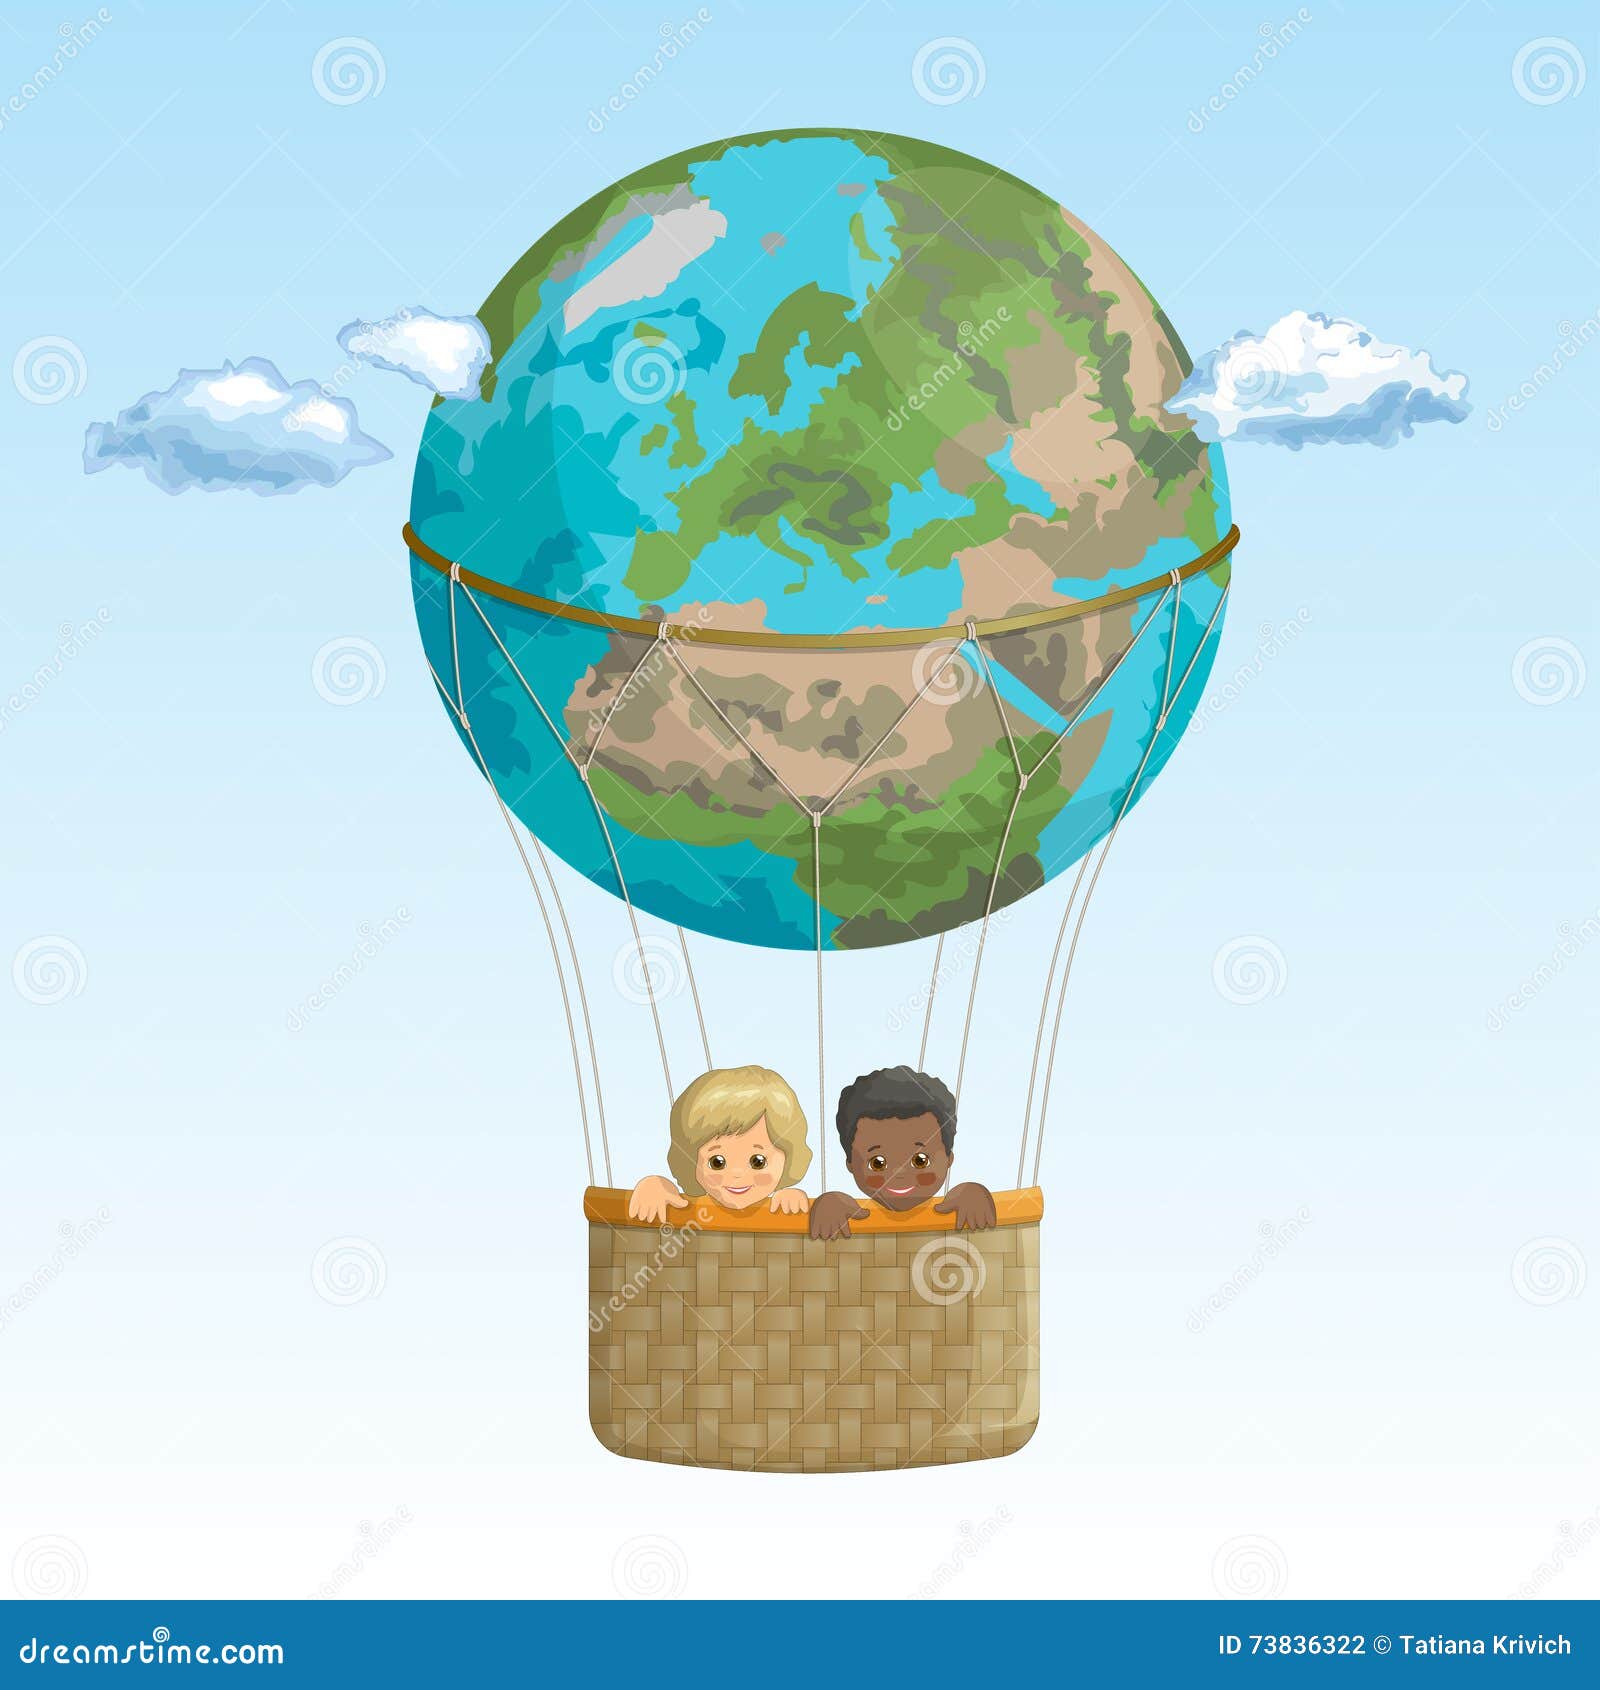 В страну знаний на воздушном шаре. Земной шар. Земной шар в корзине. Путешествие по земному шару для детей. Воздушный шар на земле.